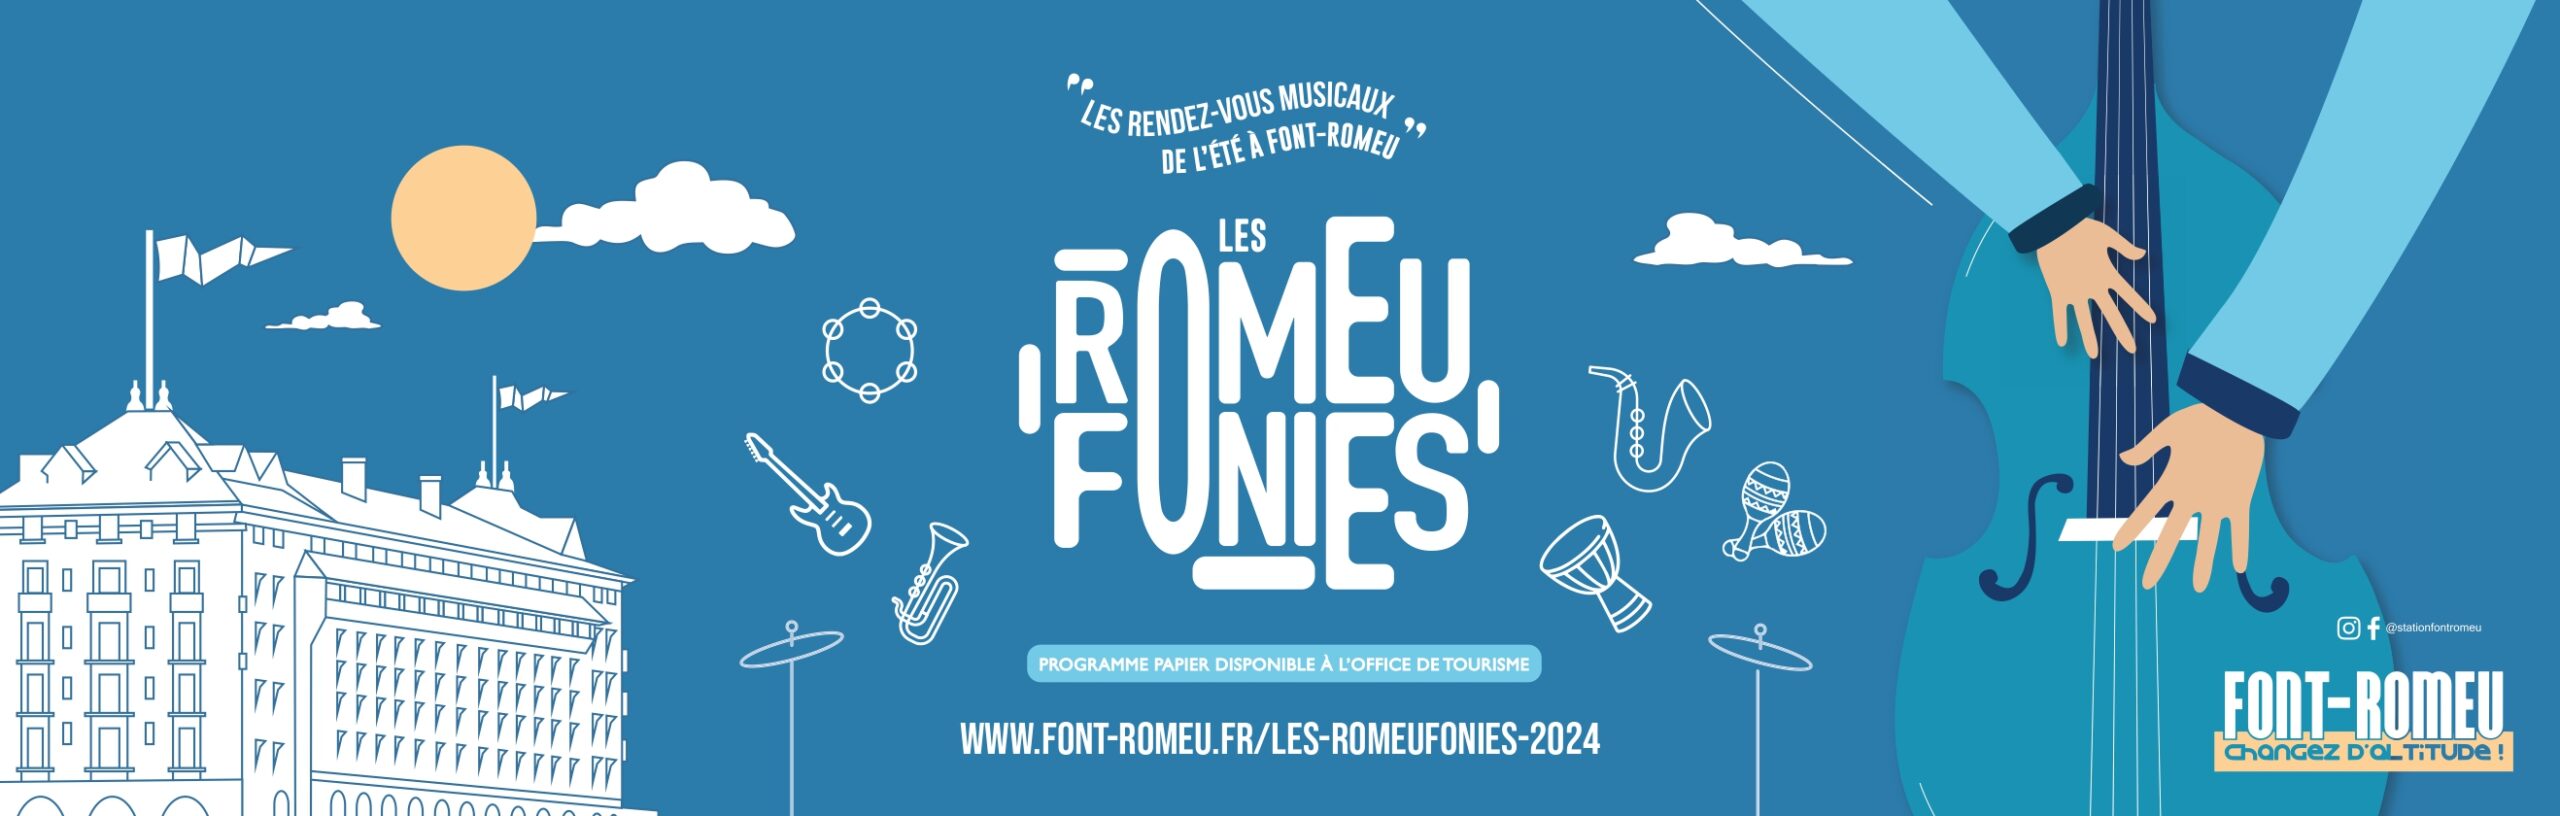 BANNIÈRE ROMEUFONIES 2024-2_page-0001